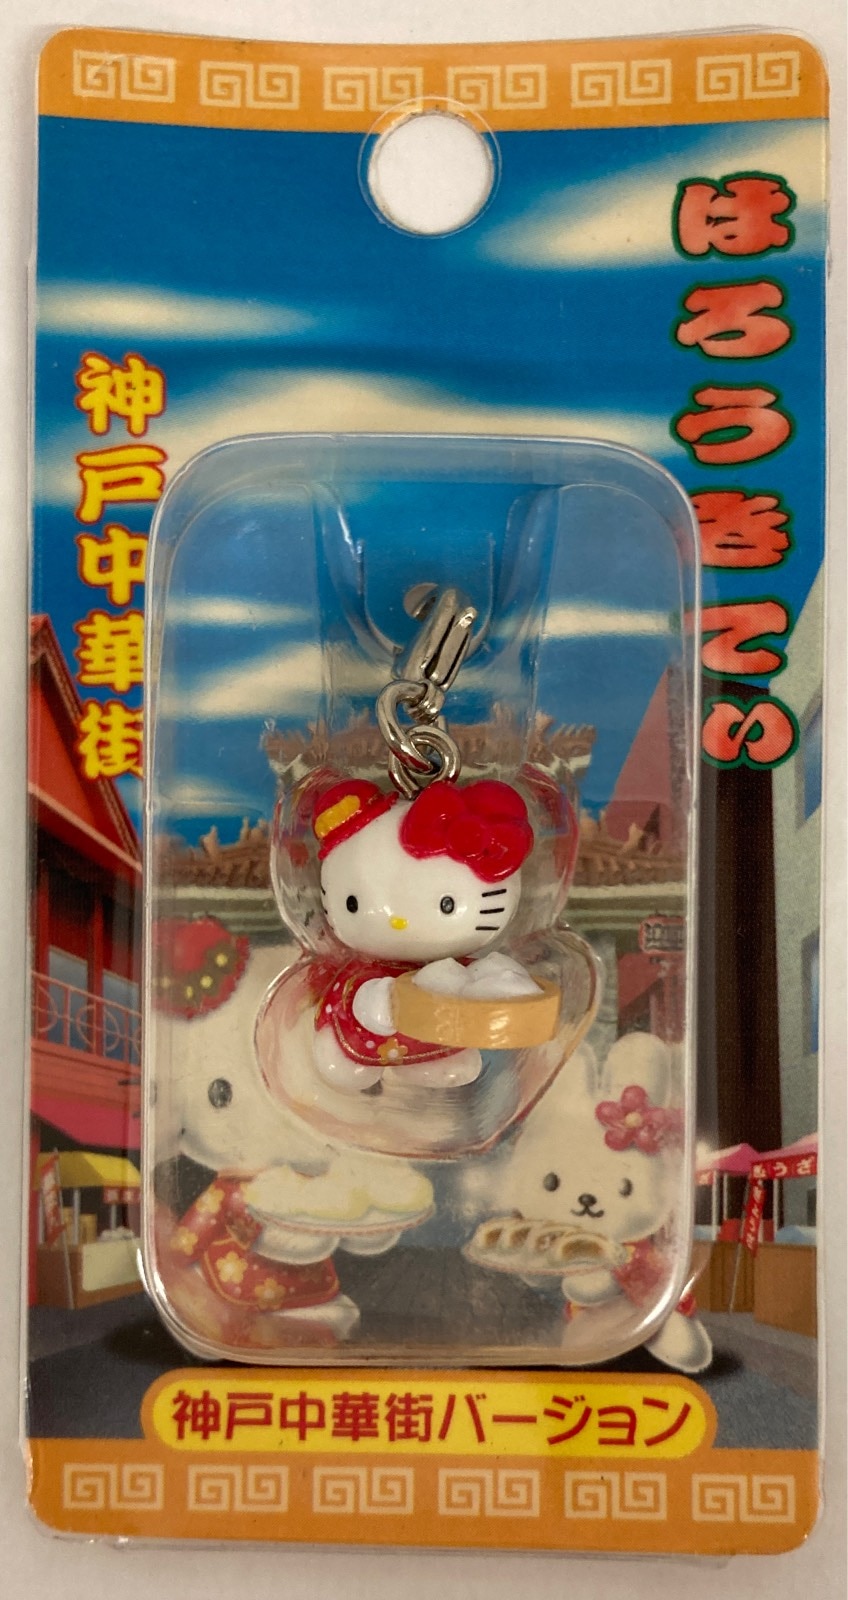 Happy End Gotochi Kitty (Regional Hello Kitty) Fastener Mascot 